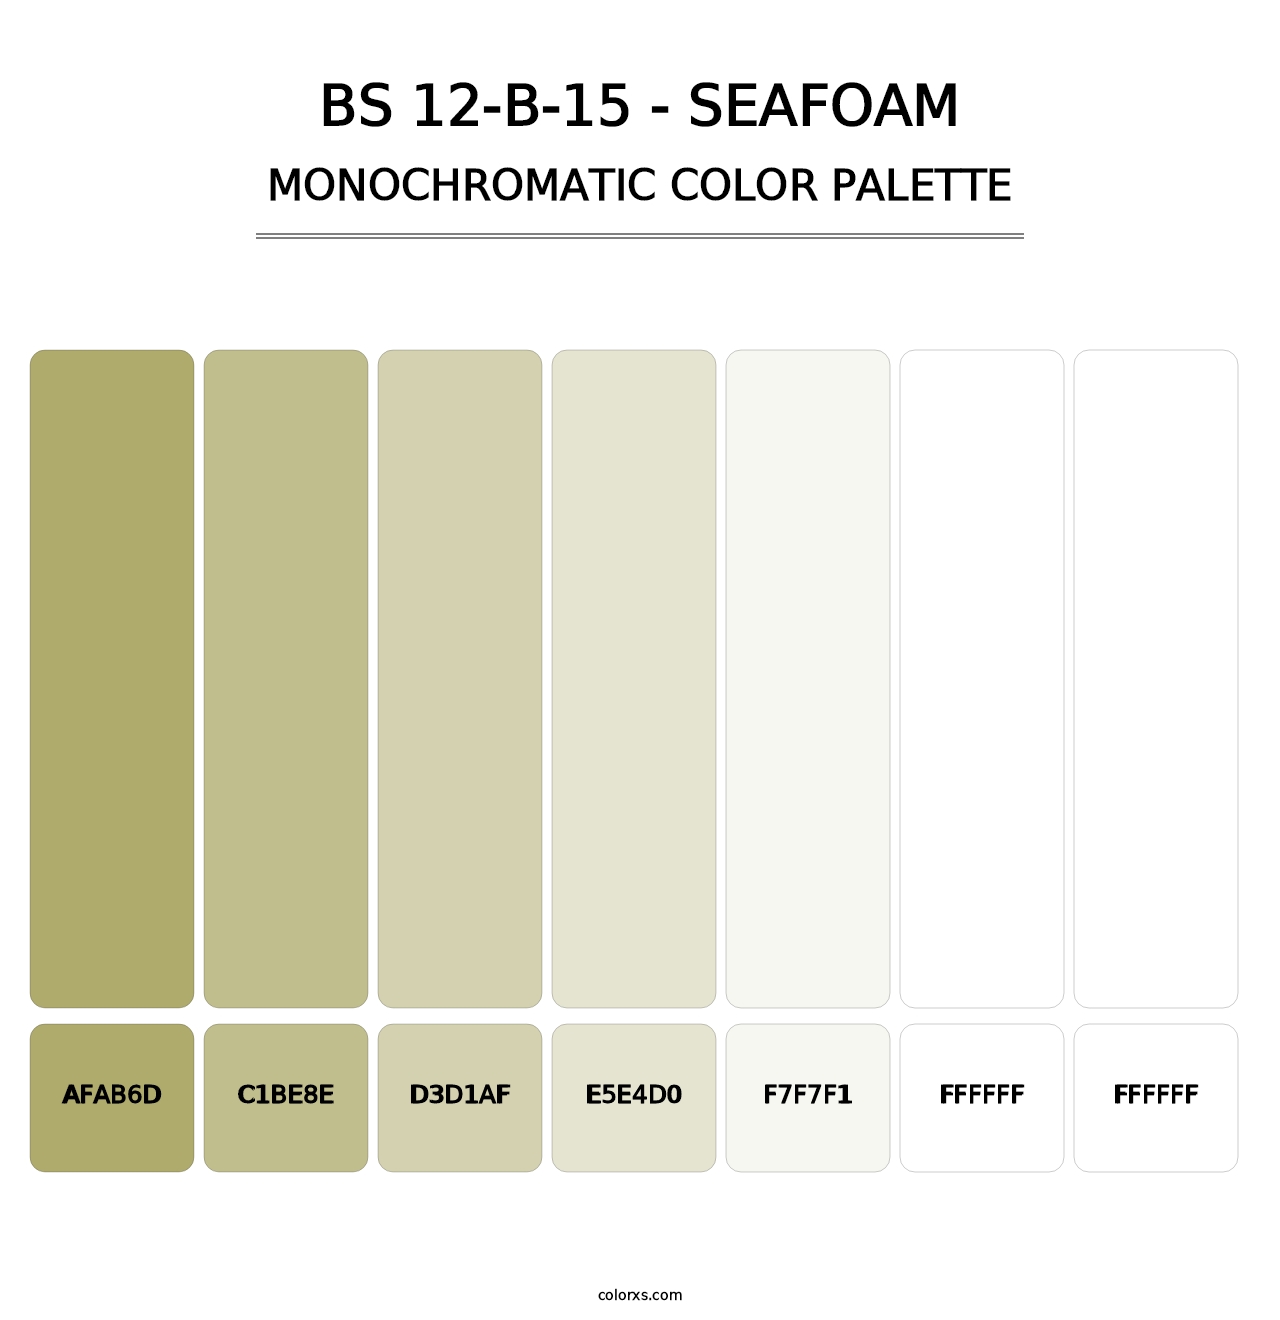 BS 12-B-15 - Seafoam - Monochromatic Color Palette